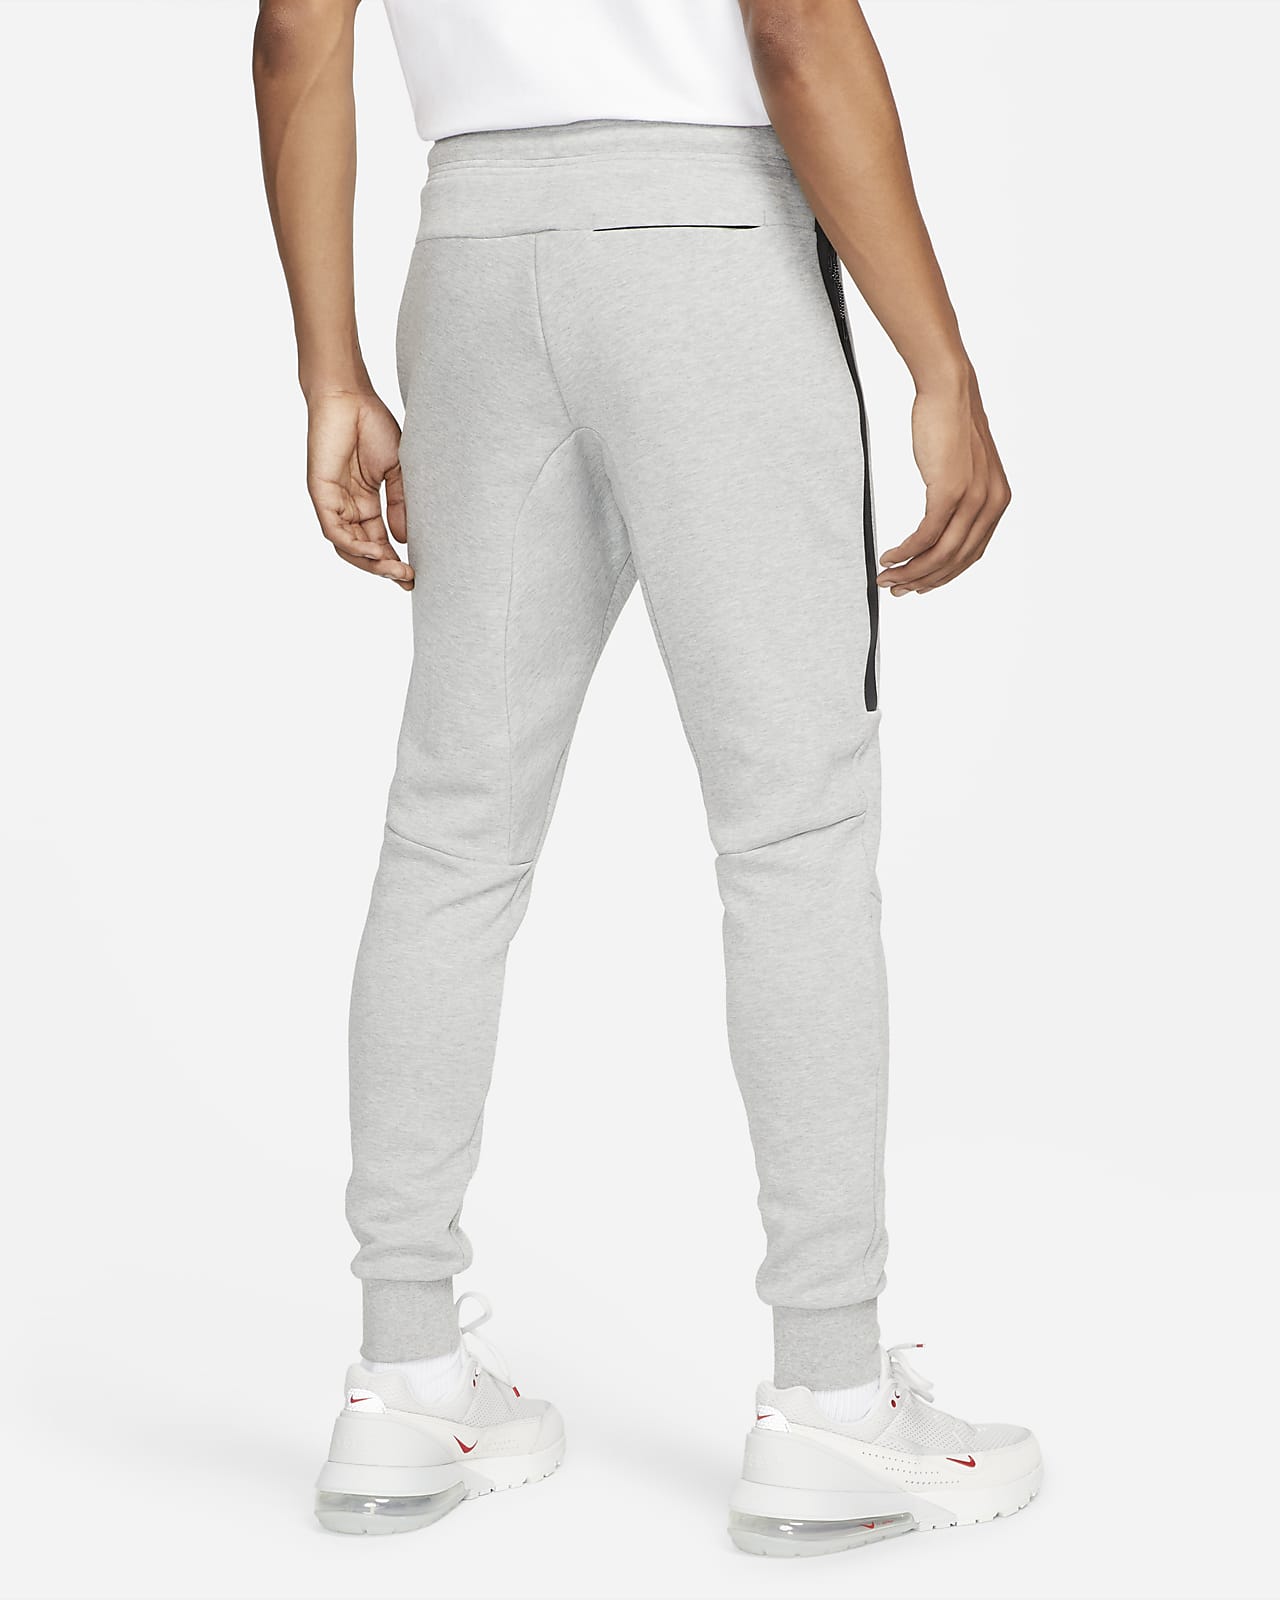 Nike Sportswear Tech Fleece OG Men's Slim Fit Joggers. LU